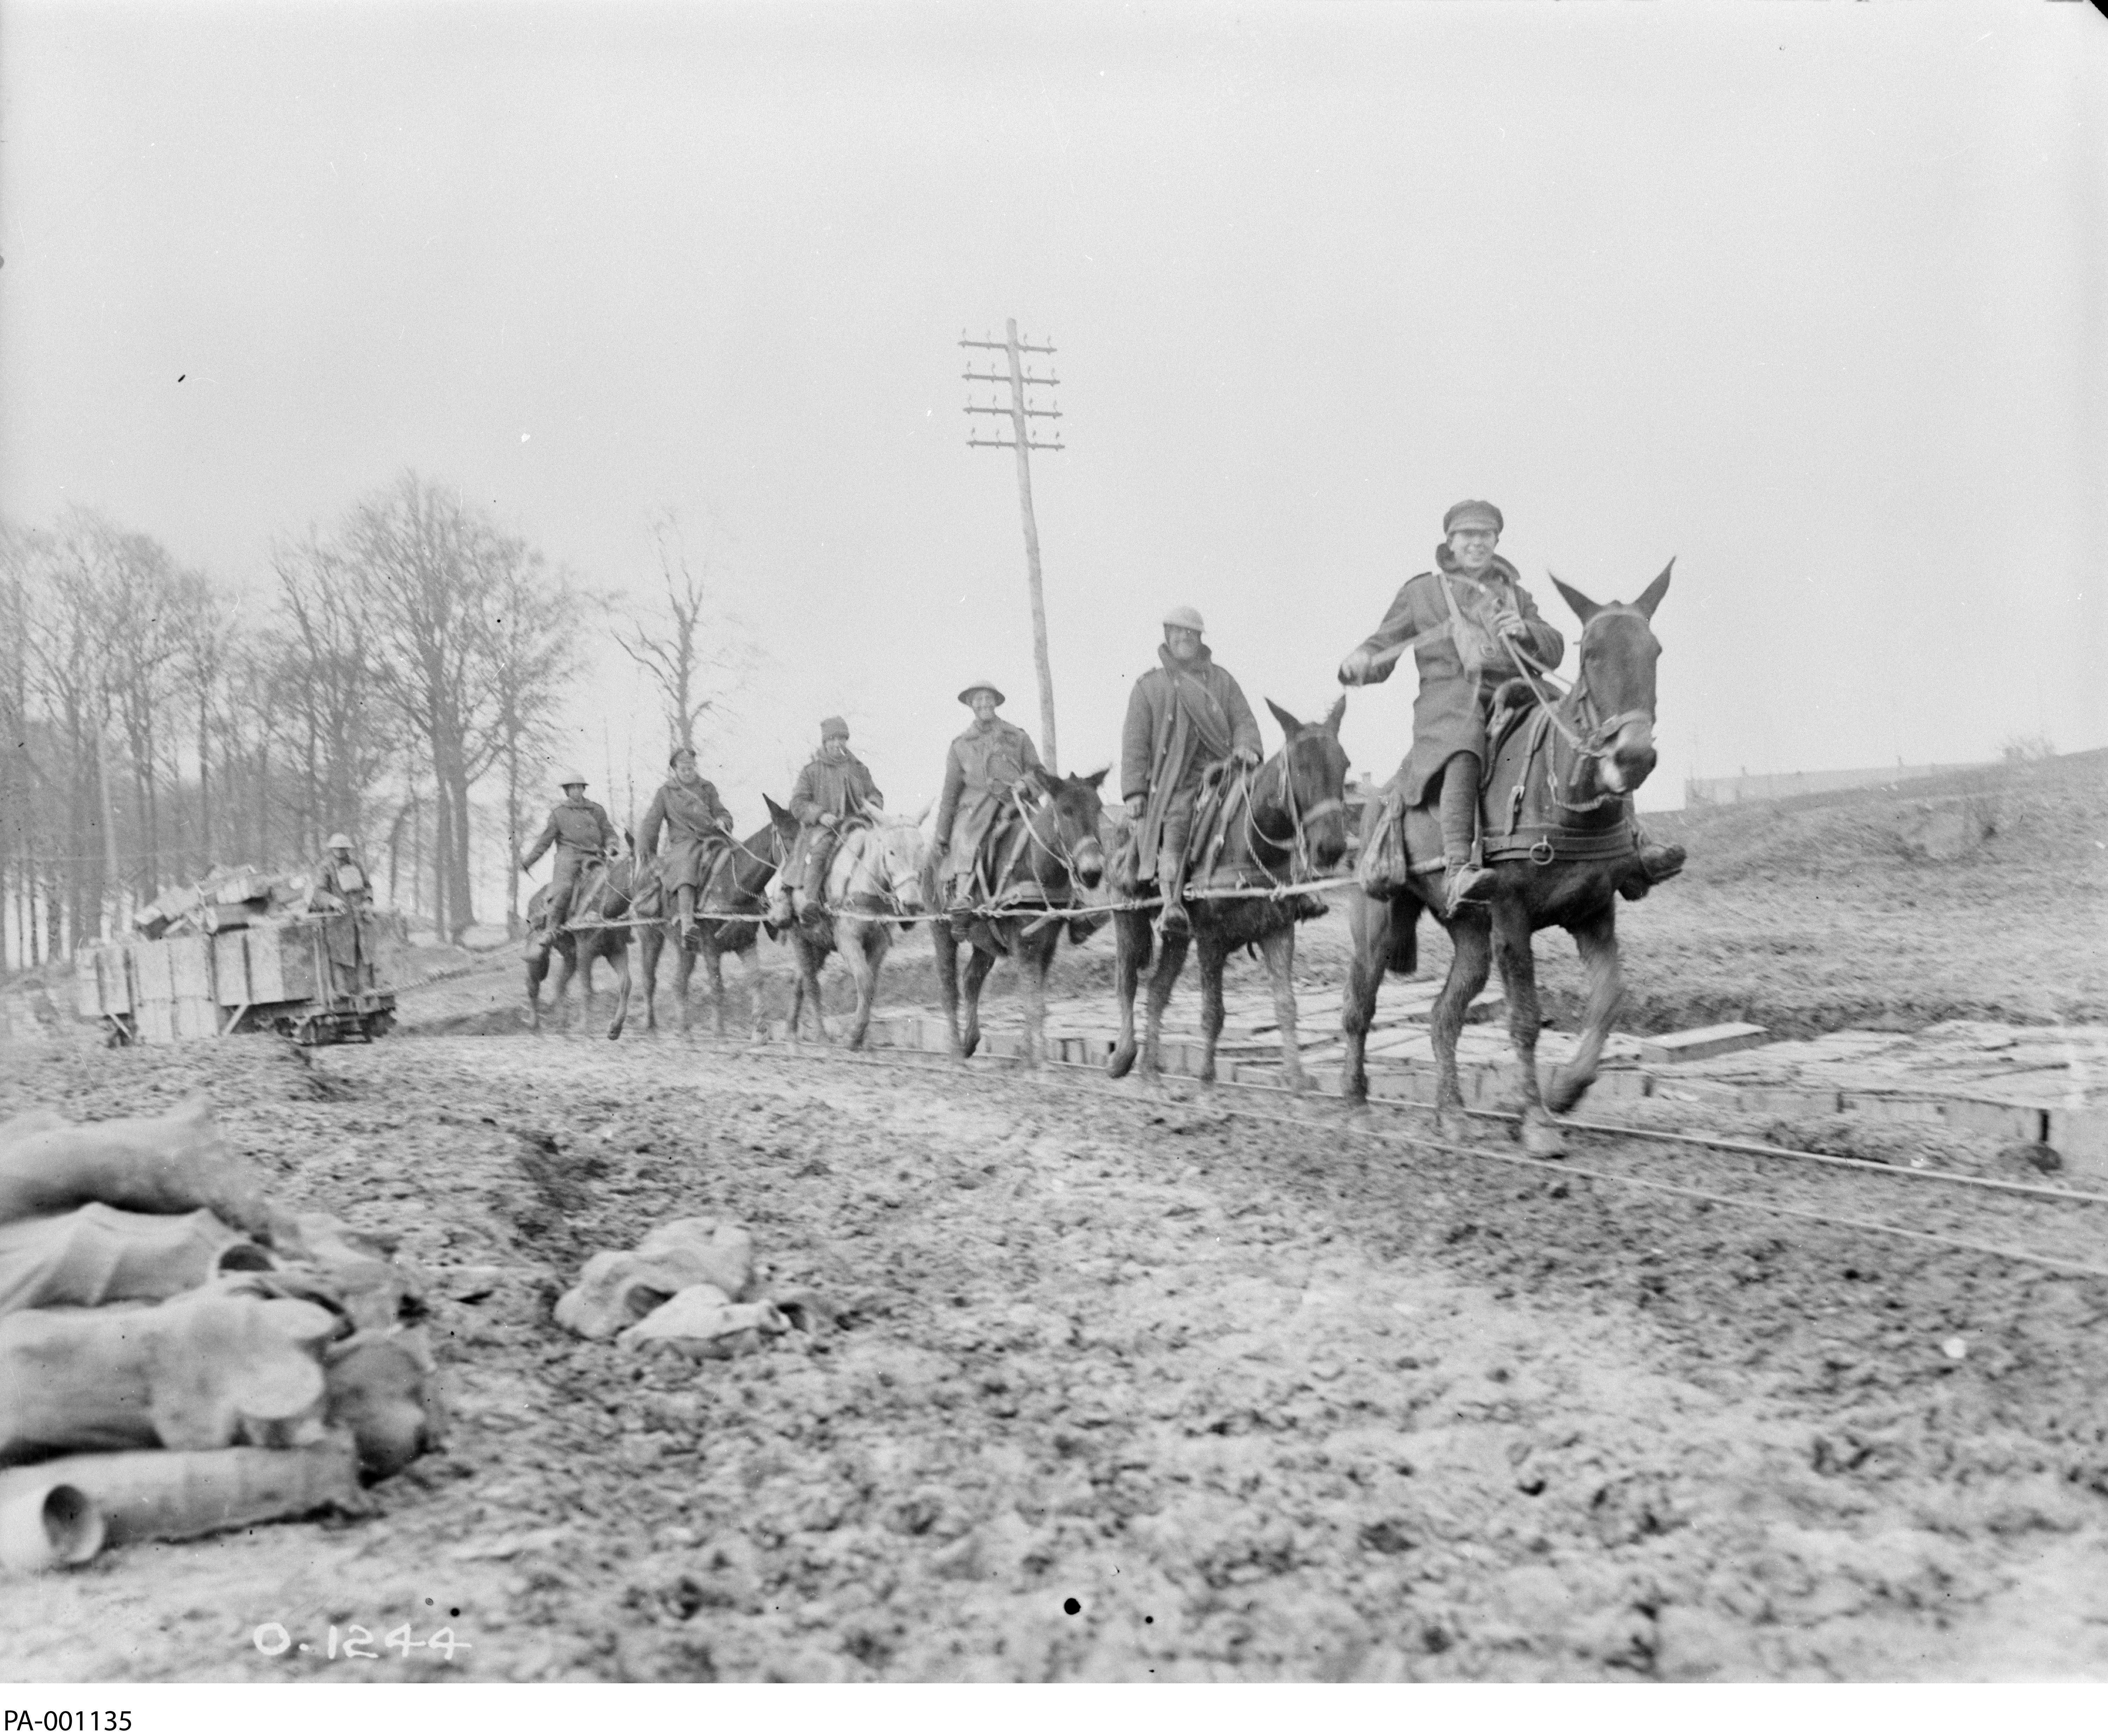 Photographie en noir et blanc – Six hommes en pardessus militaire chevauchent des mulets sur une route accidentée. Ils tirent un chariot de bois contenant des munitions.